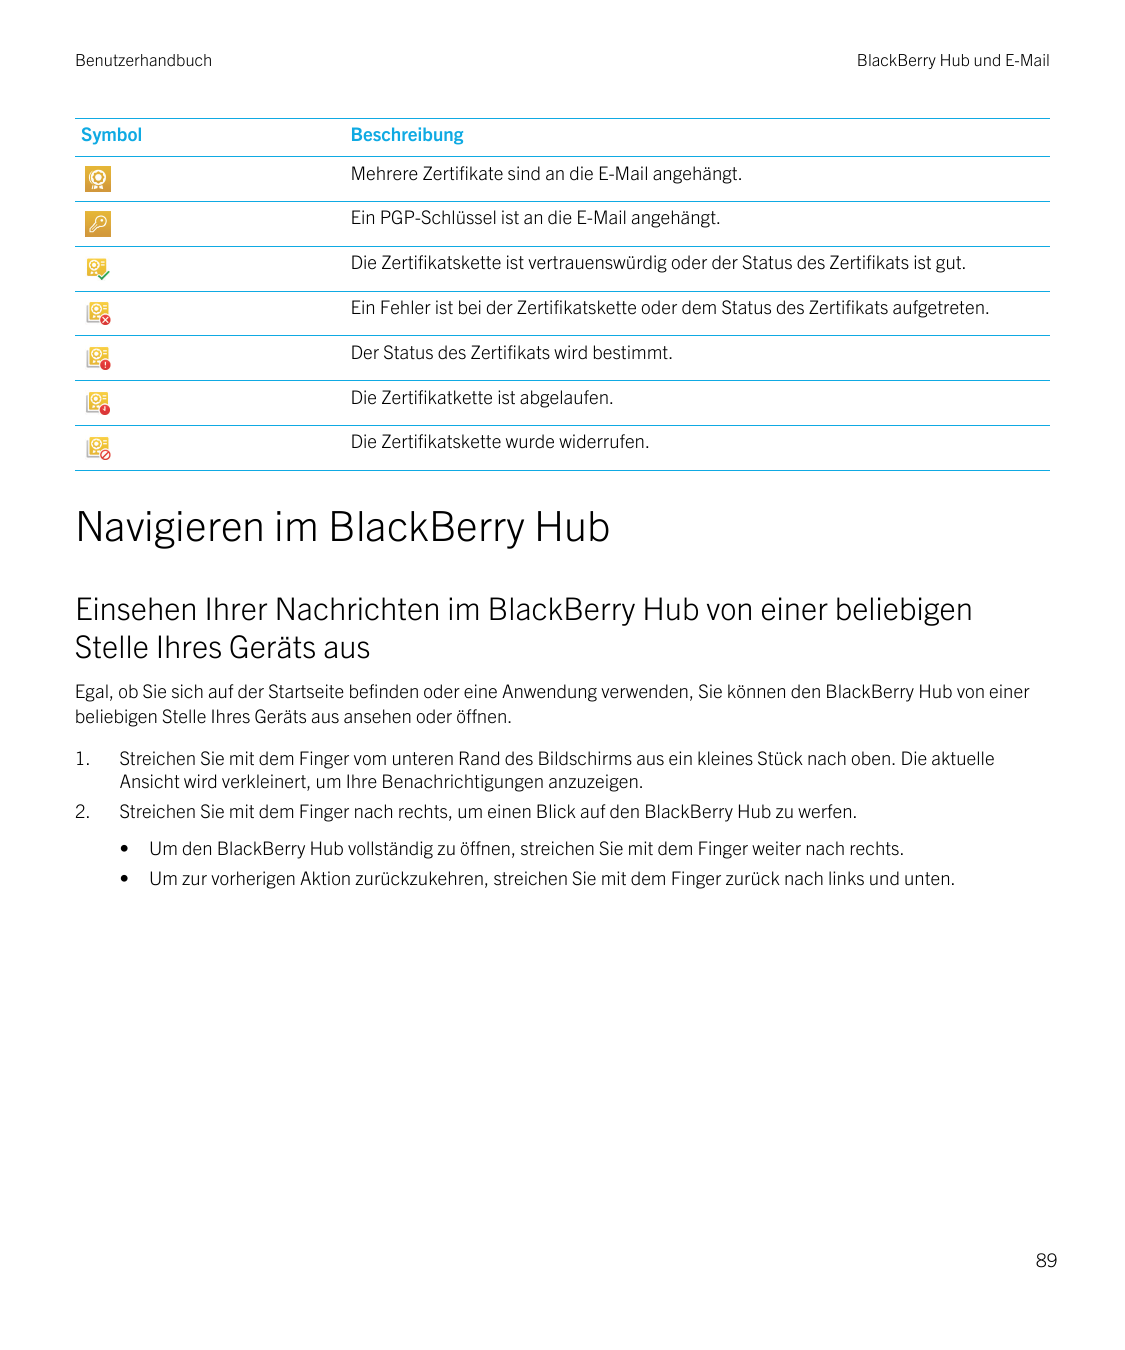 BenutzerhandbuchSymbolBlackBerry Hub und E-MailBeschreibungMehrere Zertifikate sind an die E-Mail angehängt.Ein PGP-Schlüssel is